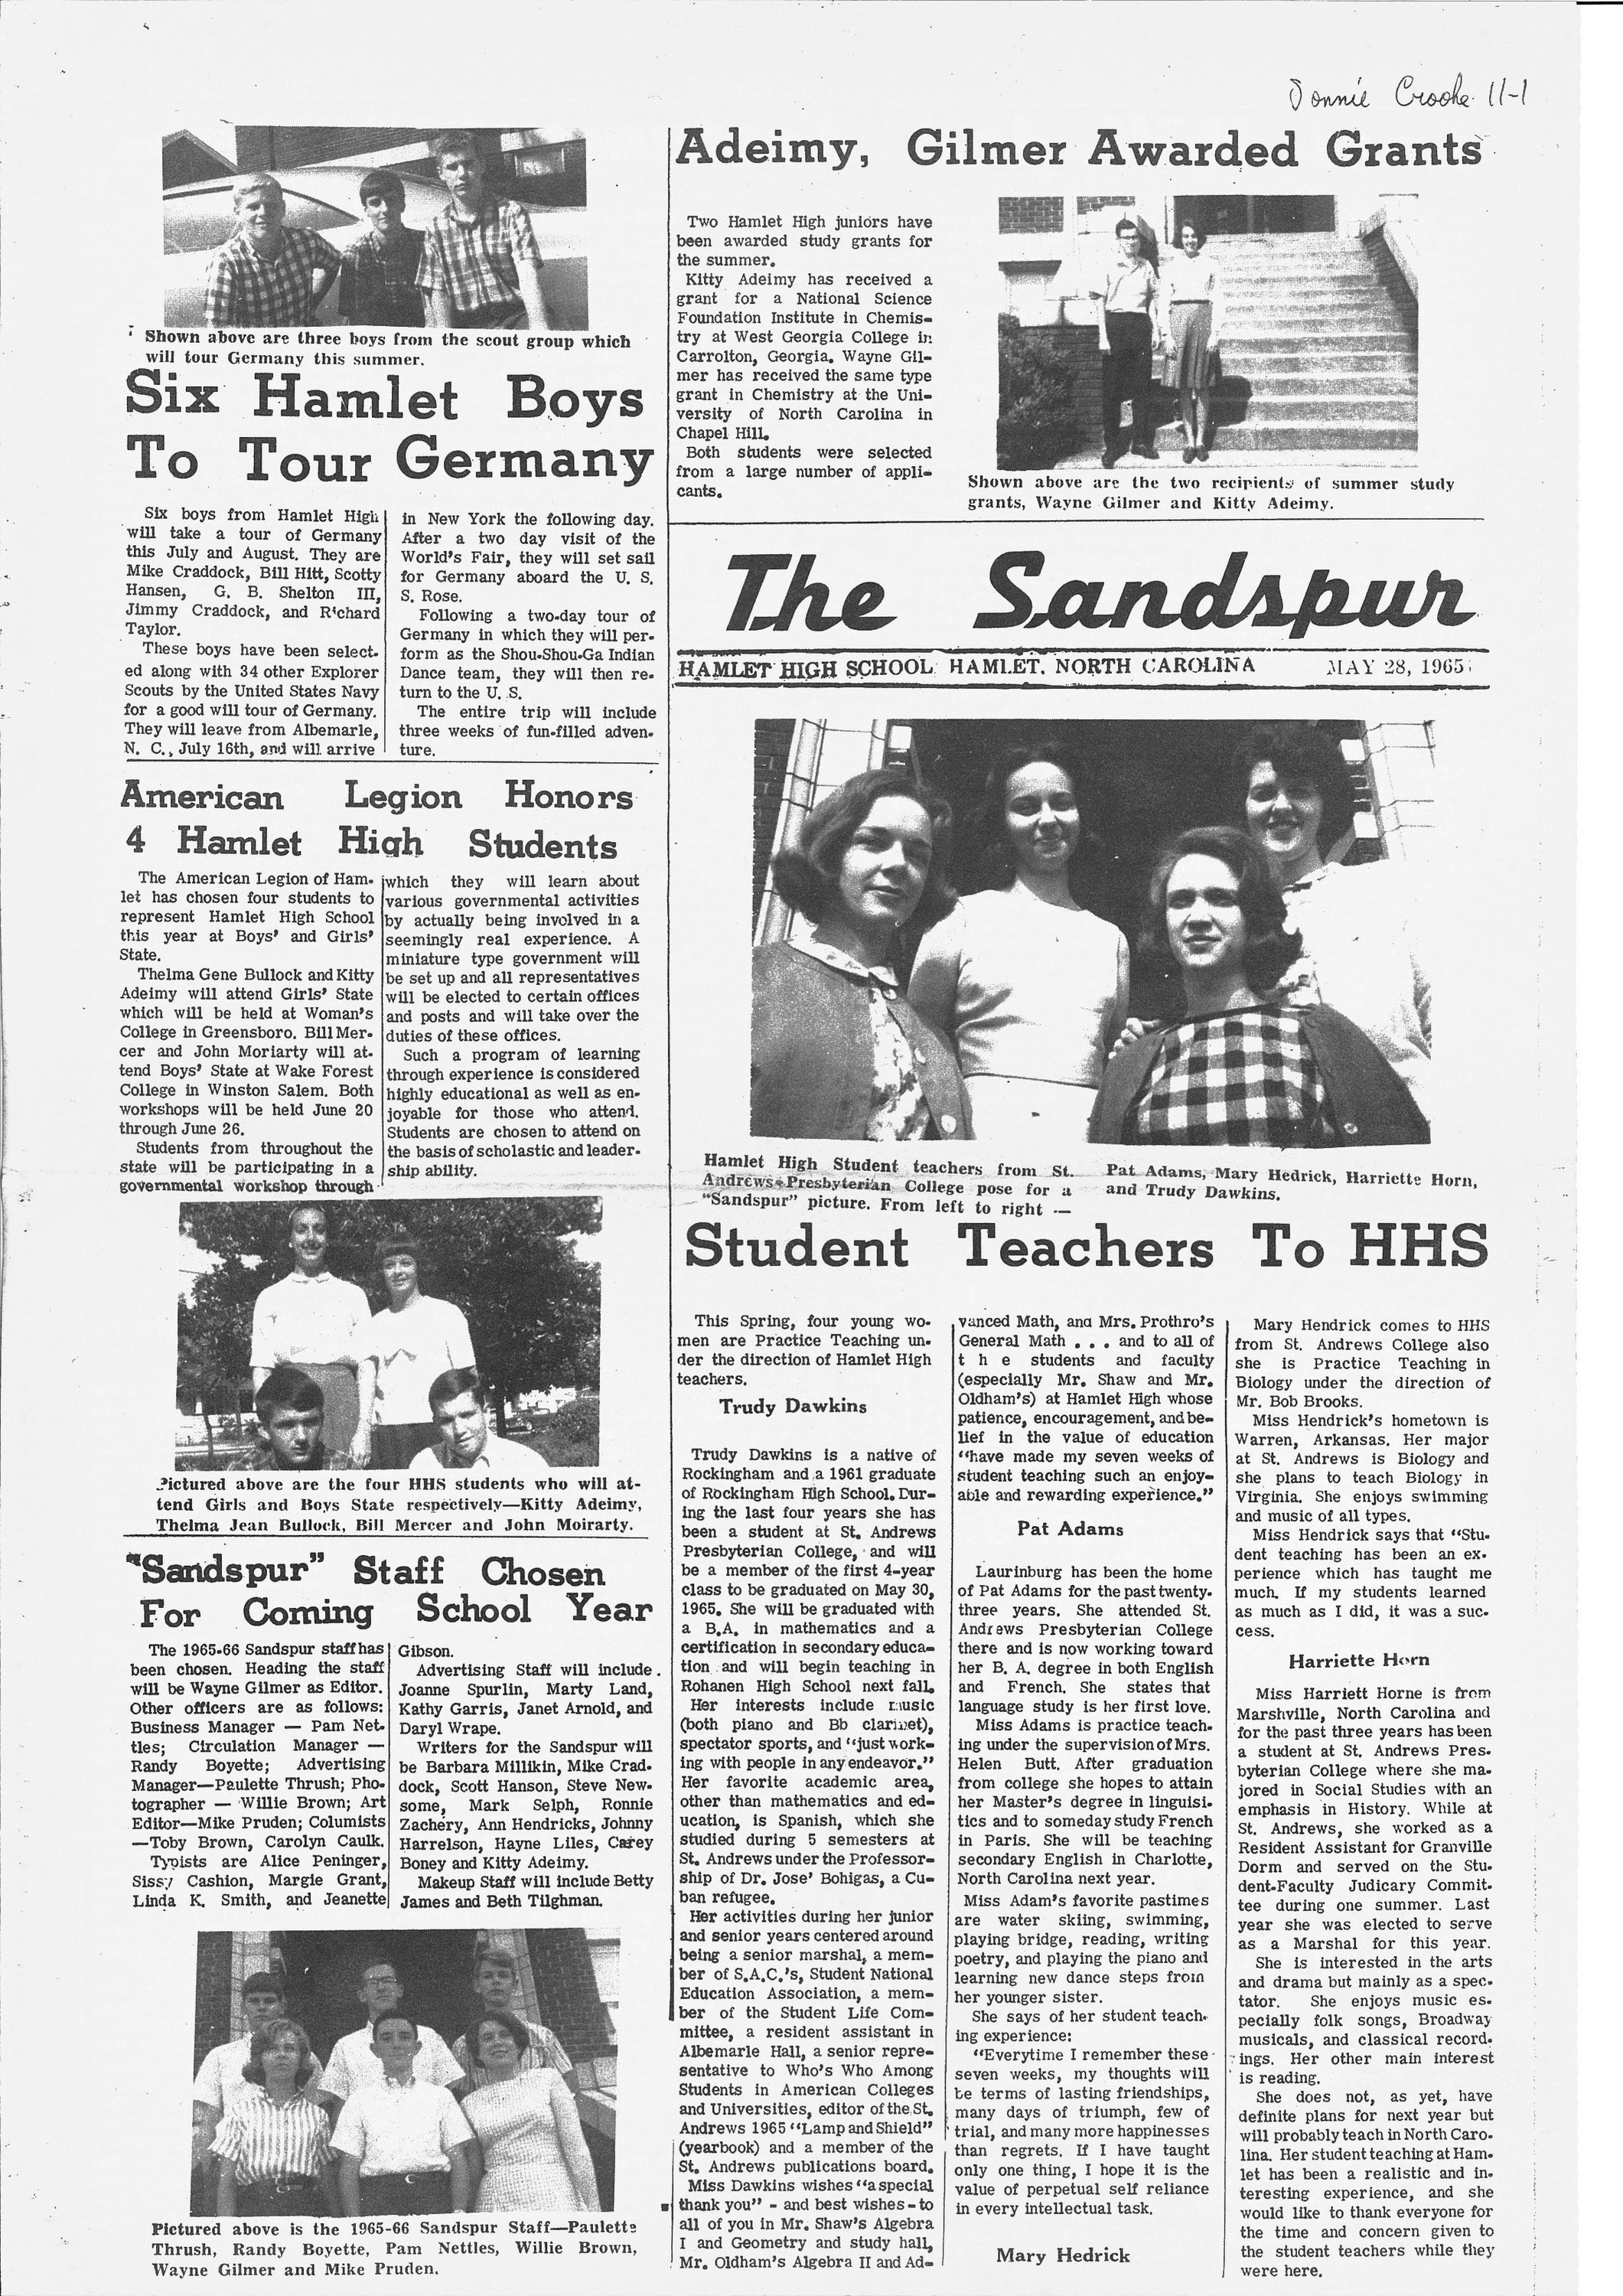 6 Sandspur_May 28 1965_Page_1.jpg